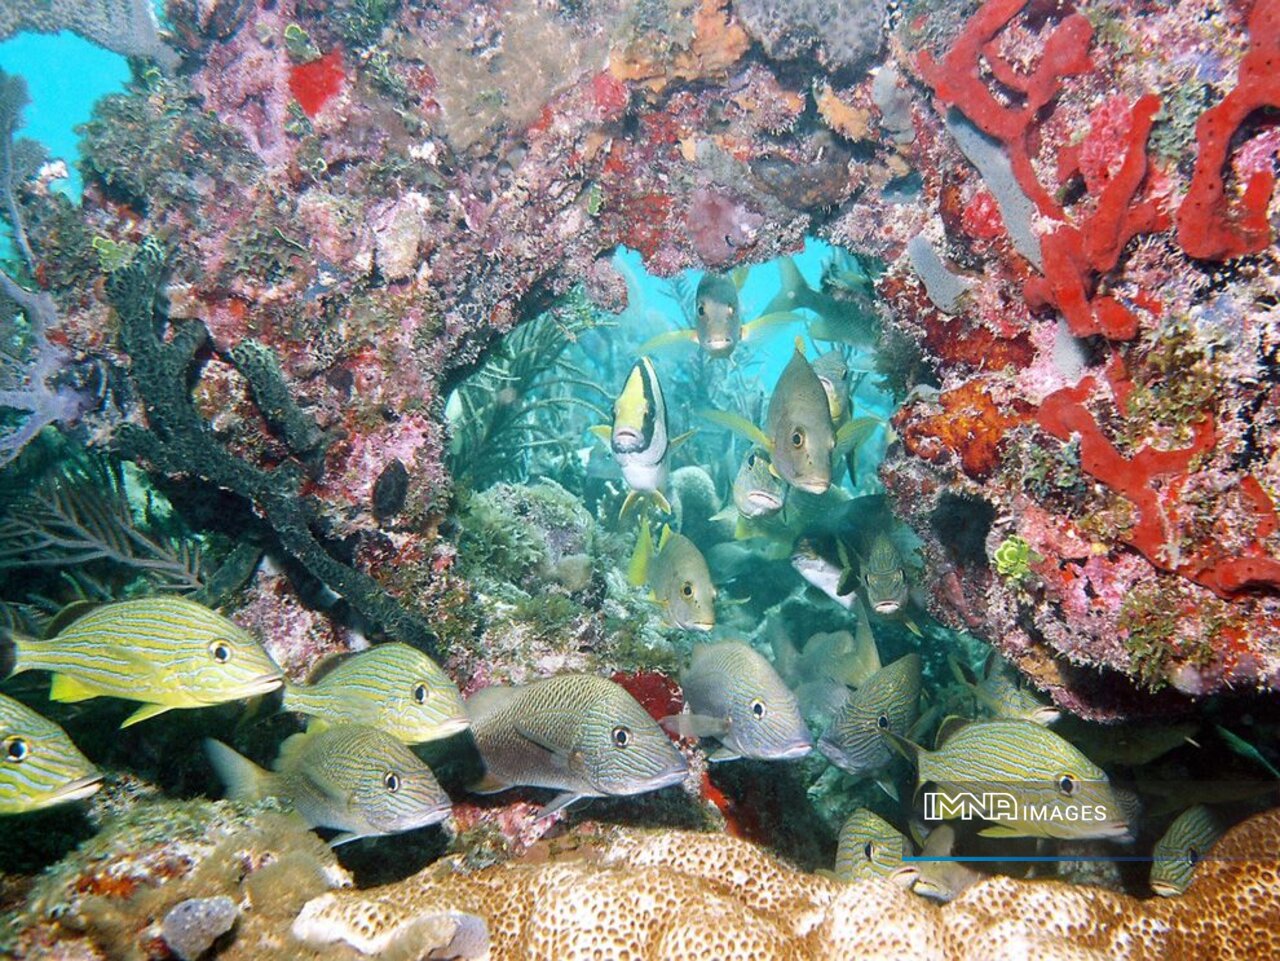  Persian Gulf's marine life gravely threatened